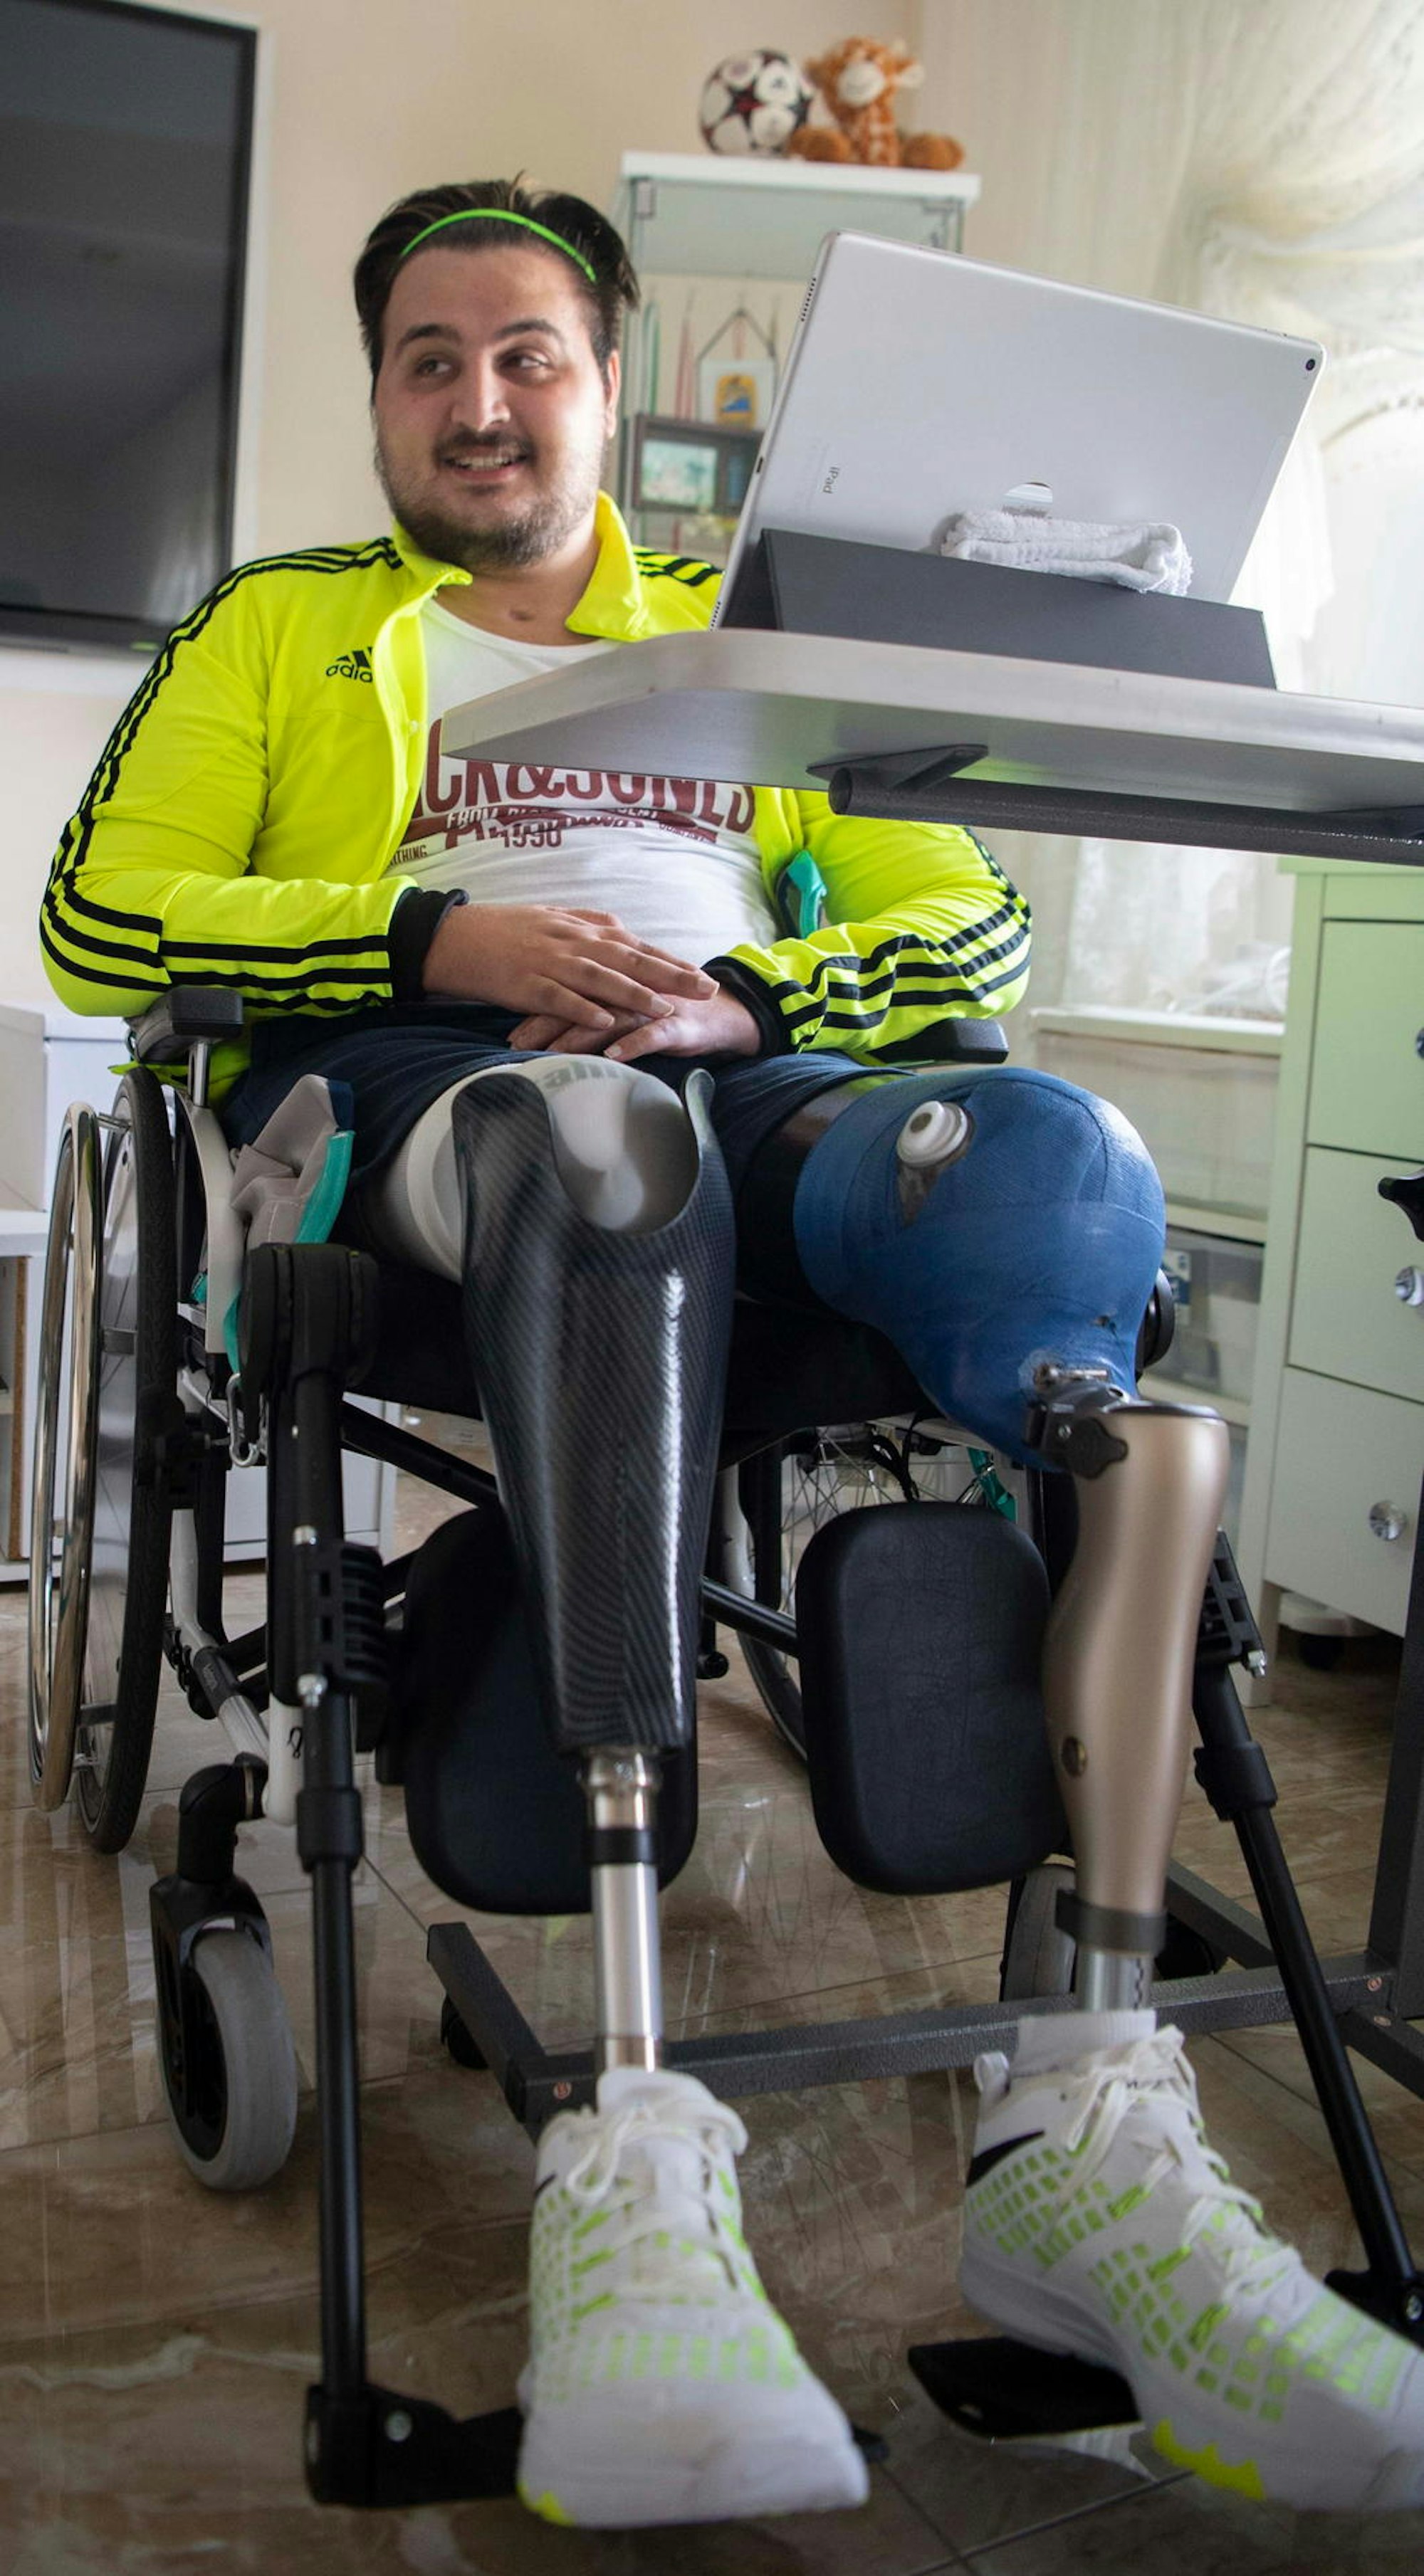 Durch eine Blutvergiftung wäre Ibrahim Khaled fast ums Leben gekommen. Er verlor beide Beine, nicht aber seinen Lebensmut und seinen Kampfgeist. Nächstes Jahr will er wieder laufen können.